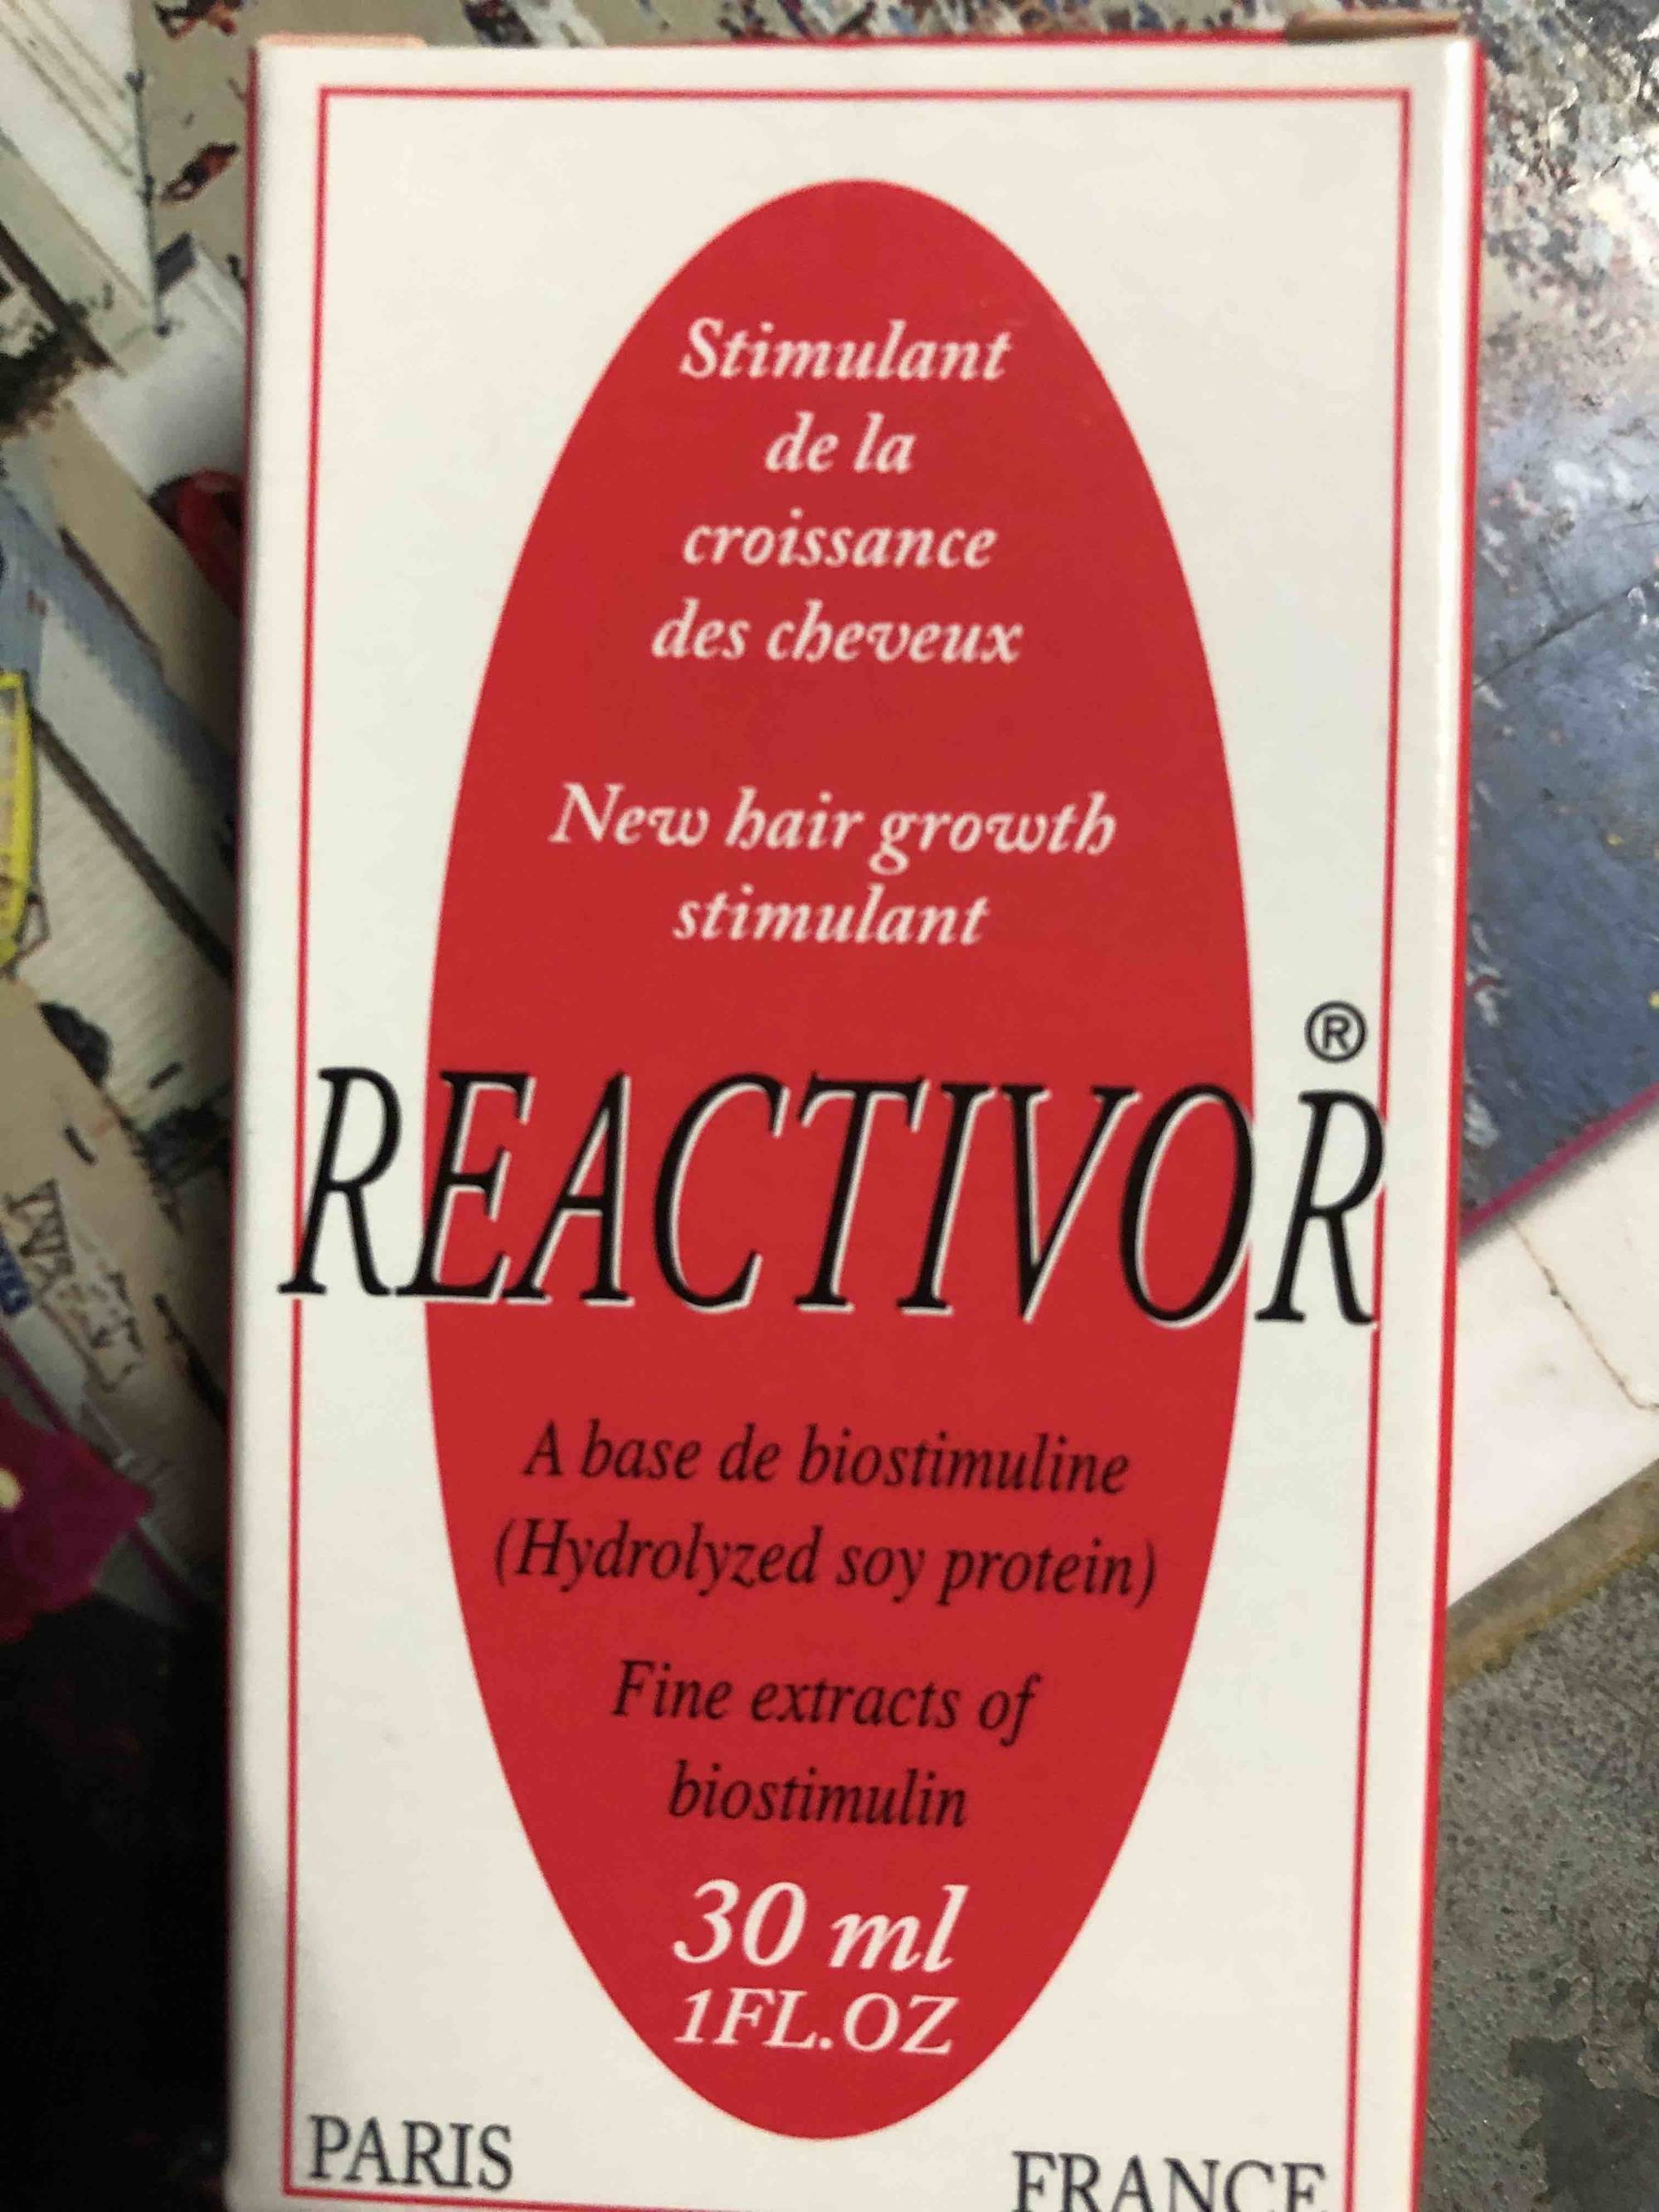 REACTIVOR - Stimulant de la croissance des cheveux